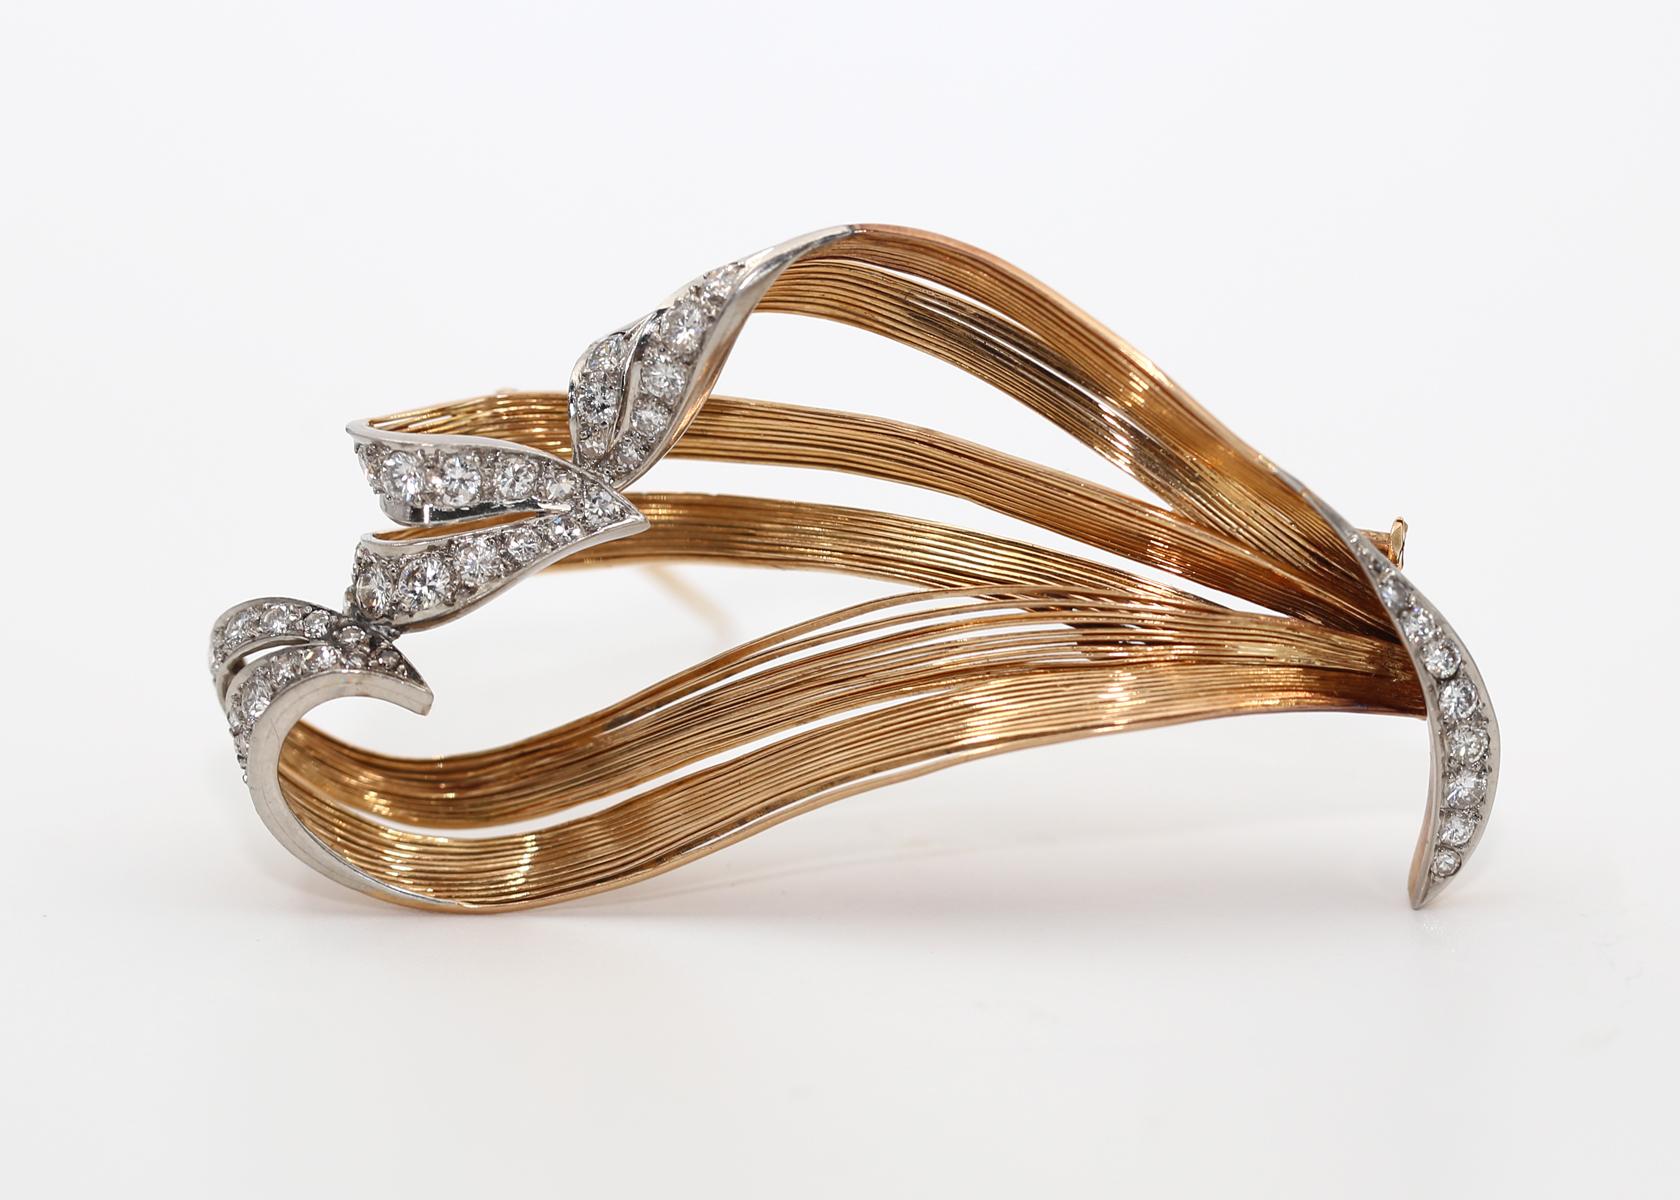 Broche en or jaune 18K Diamants Motifs naturels.
Il est composé de fils d'or et de décorations en platine, serties de diamants.

Créée vers 1930, elle se situe à une époque entre deux styles de design, dépassant l'Art déco et devant trouver quelque